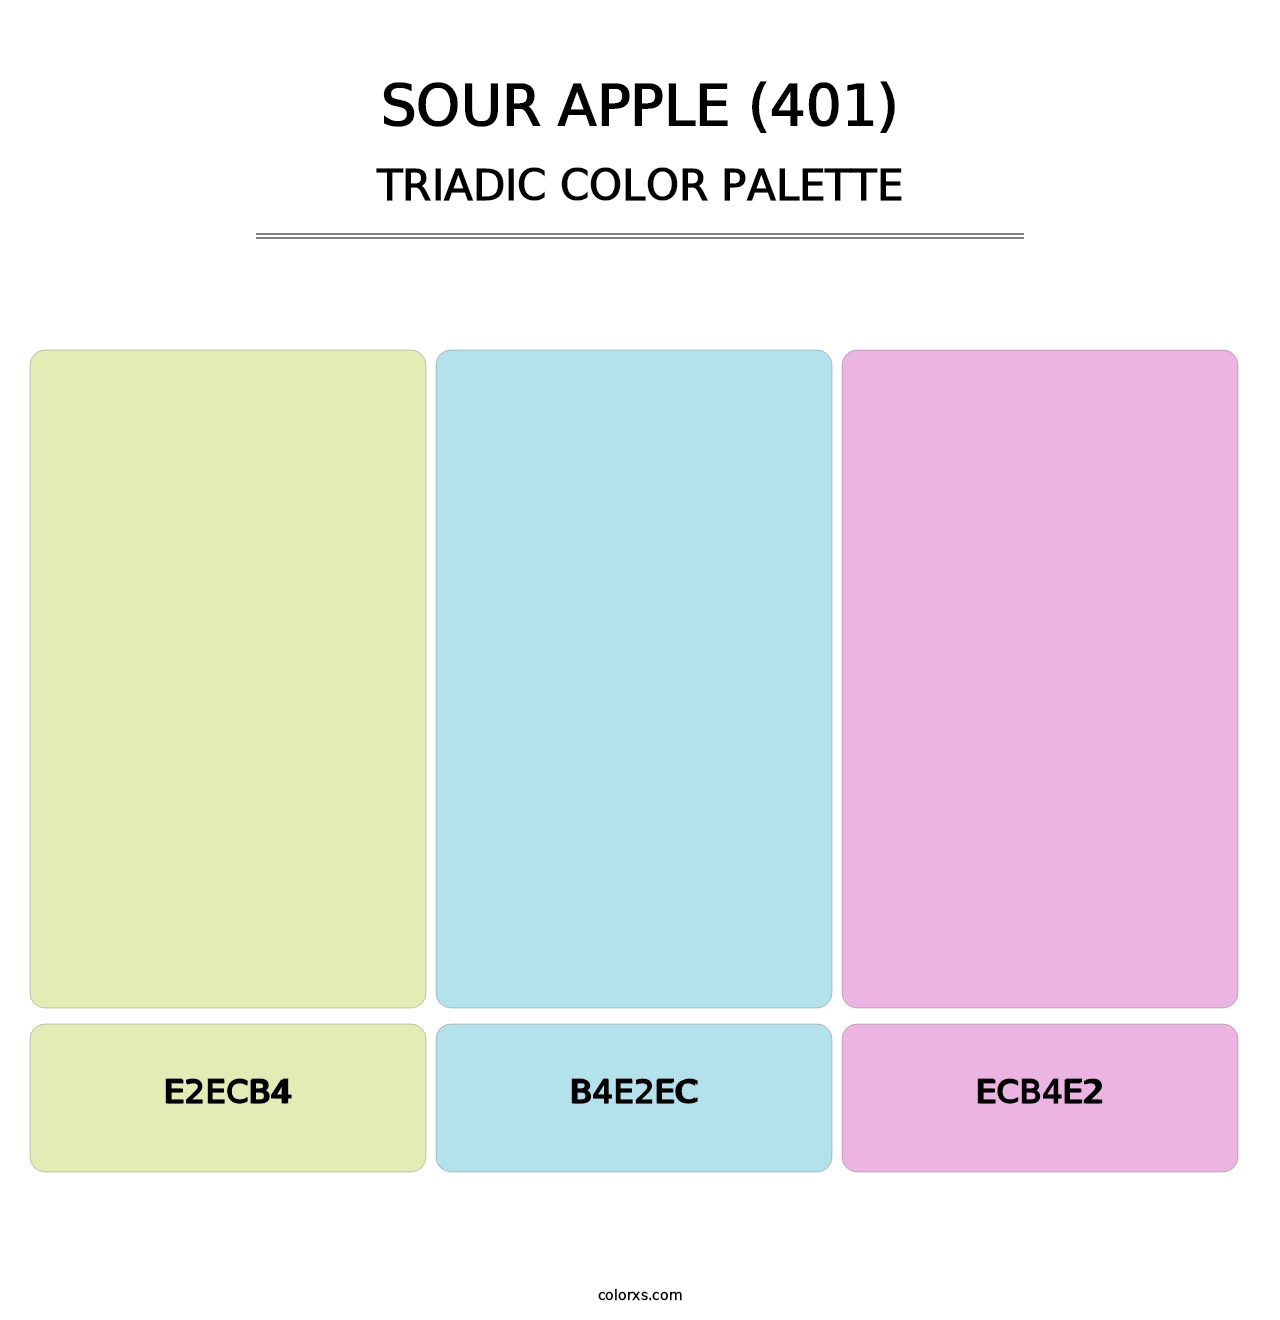 Sour Apple (401) - Triadic Color Palette